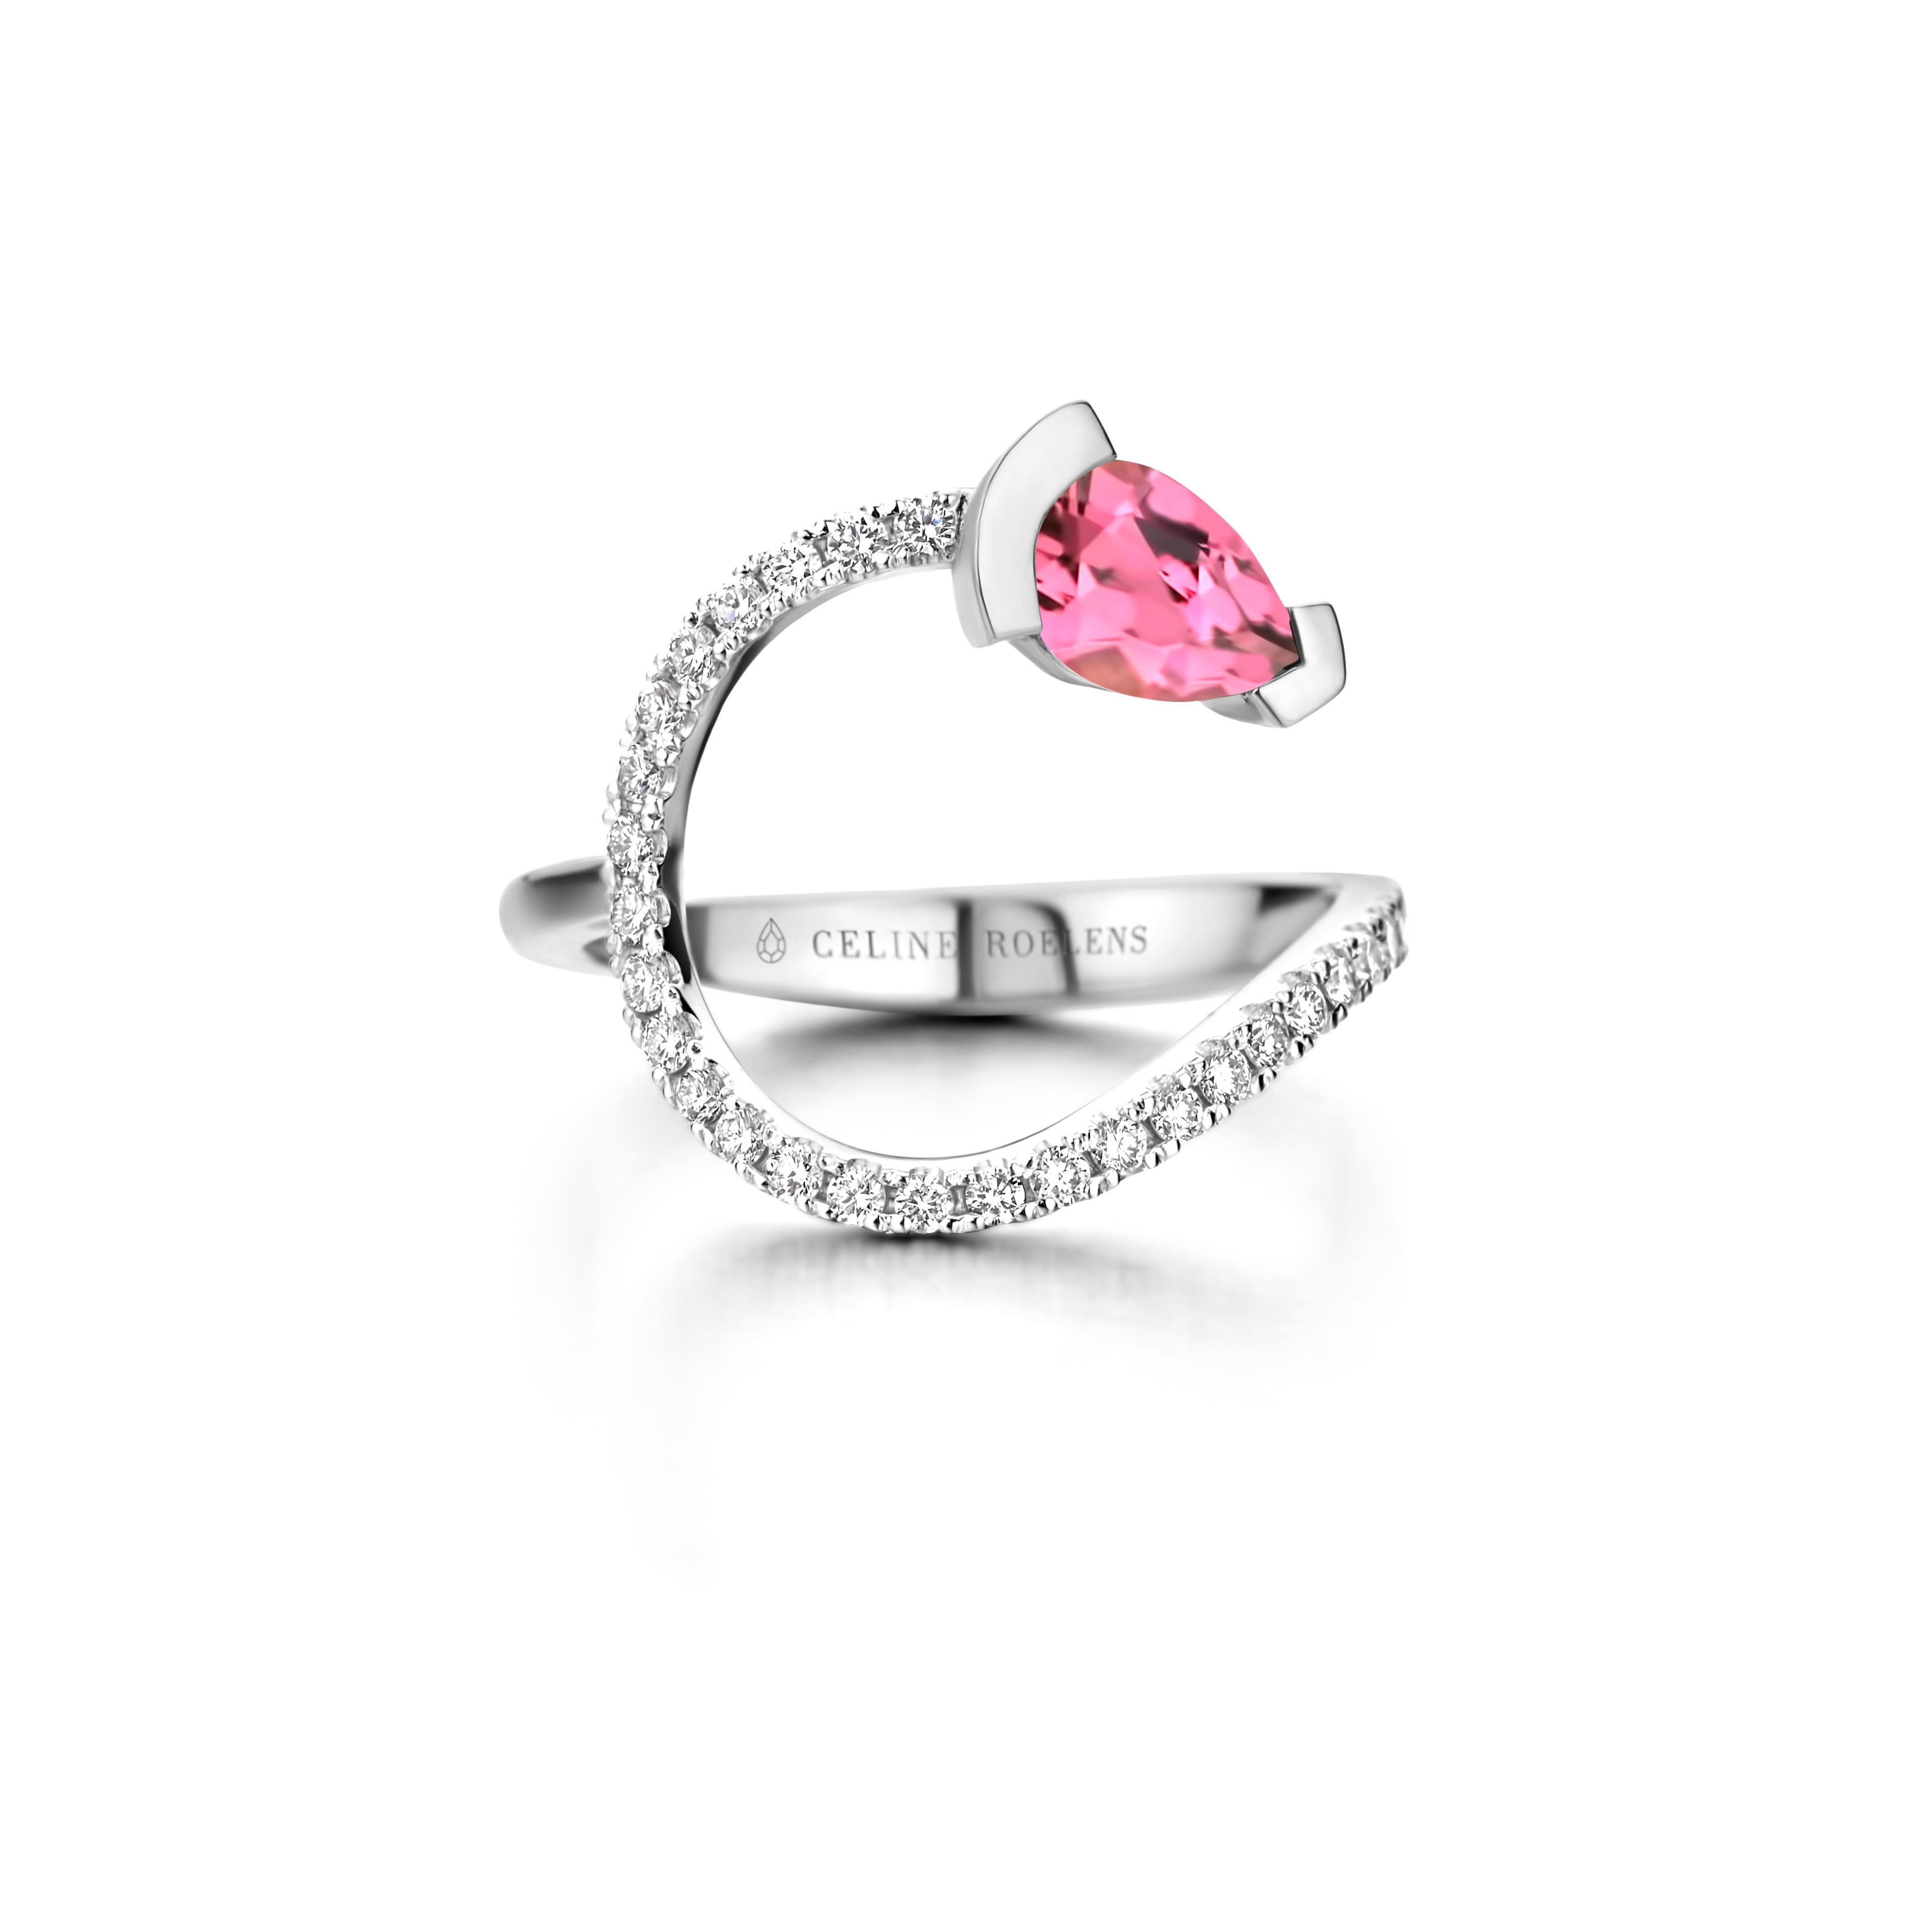 ADELINE geschwungener Ring aus 18 Kt Roségold, besetzt mit einem birnenförmigen rosa Turmalin und 0,33 Karat Diamanten mit weißem Brillantschliff - Qualität VS F.